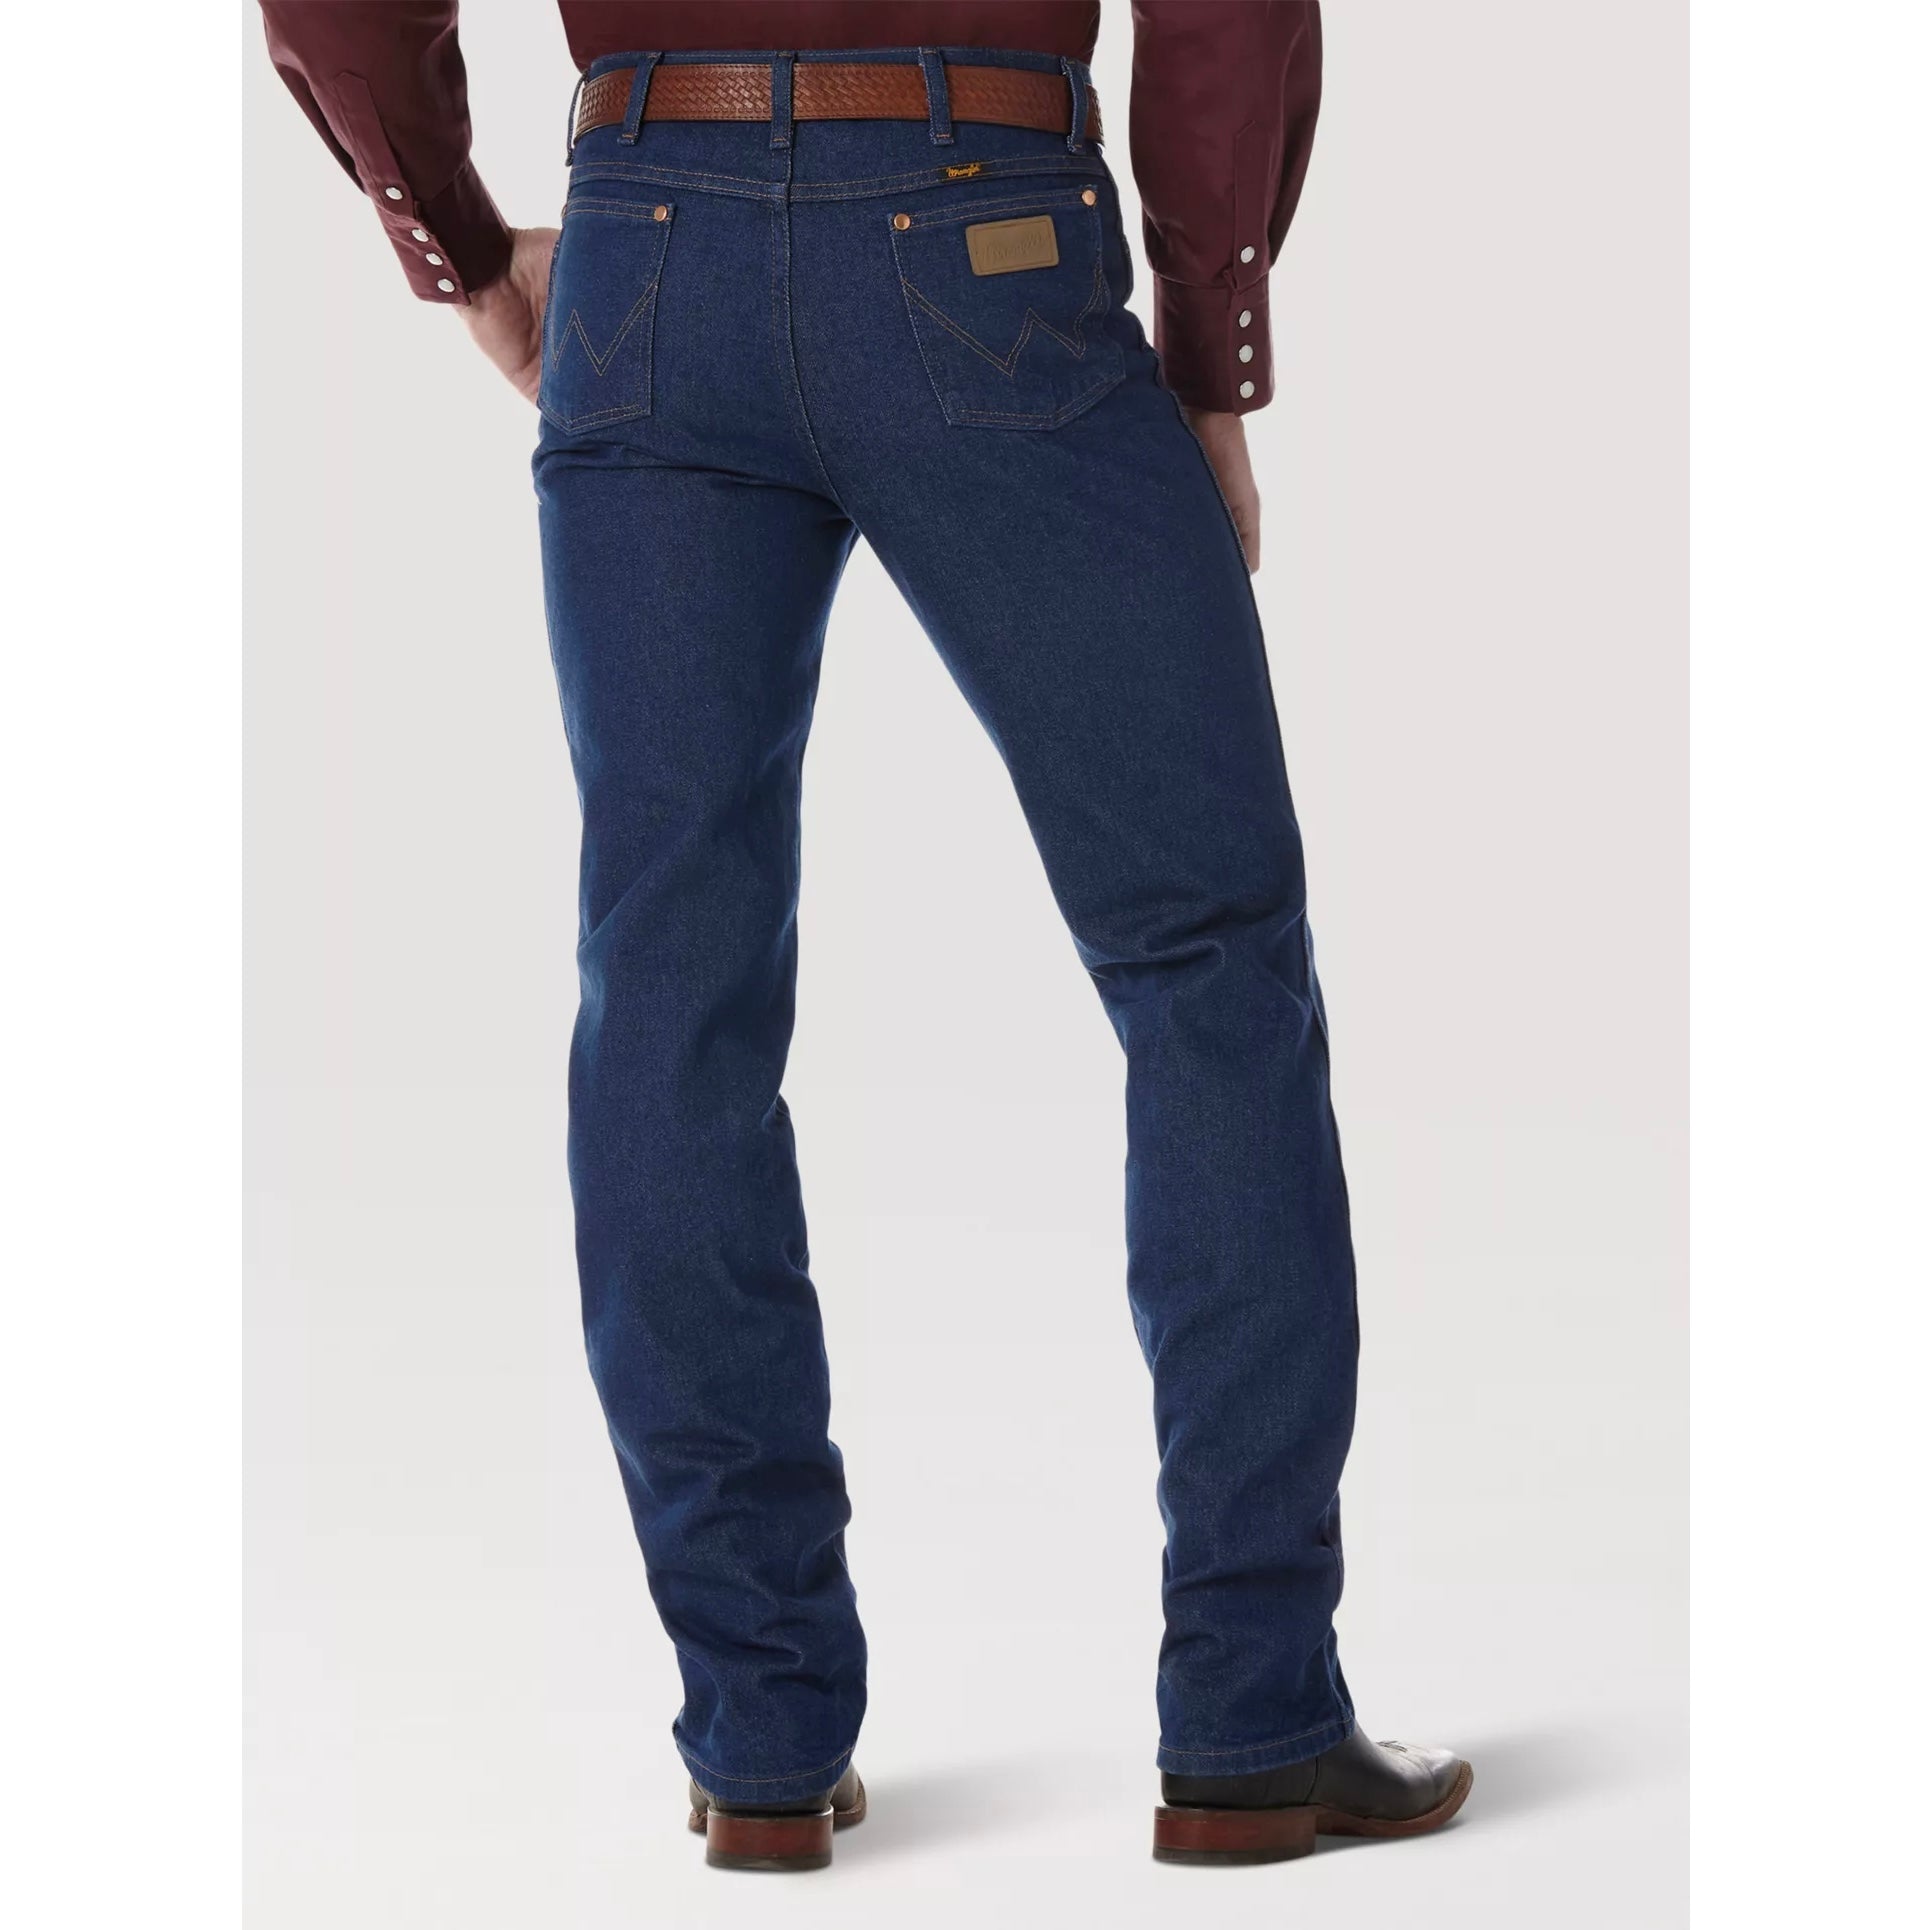  Wrangler Jeans de corte vaquero originales para hombre, color  azul, 33x36, índigo (Rigid Indigo) : Ropa, Zapatos y Joyería